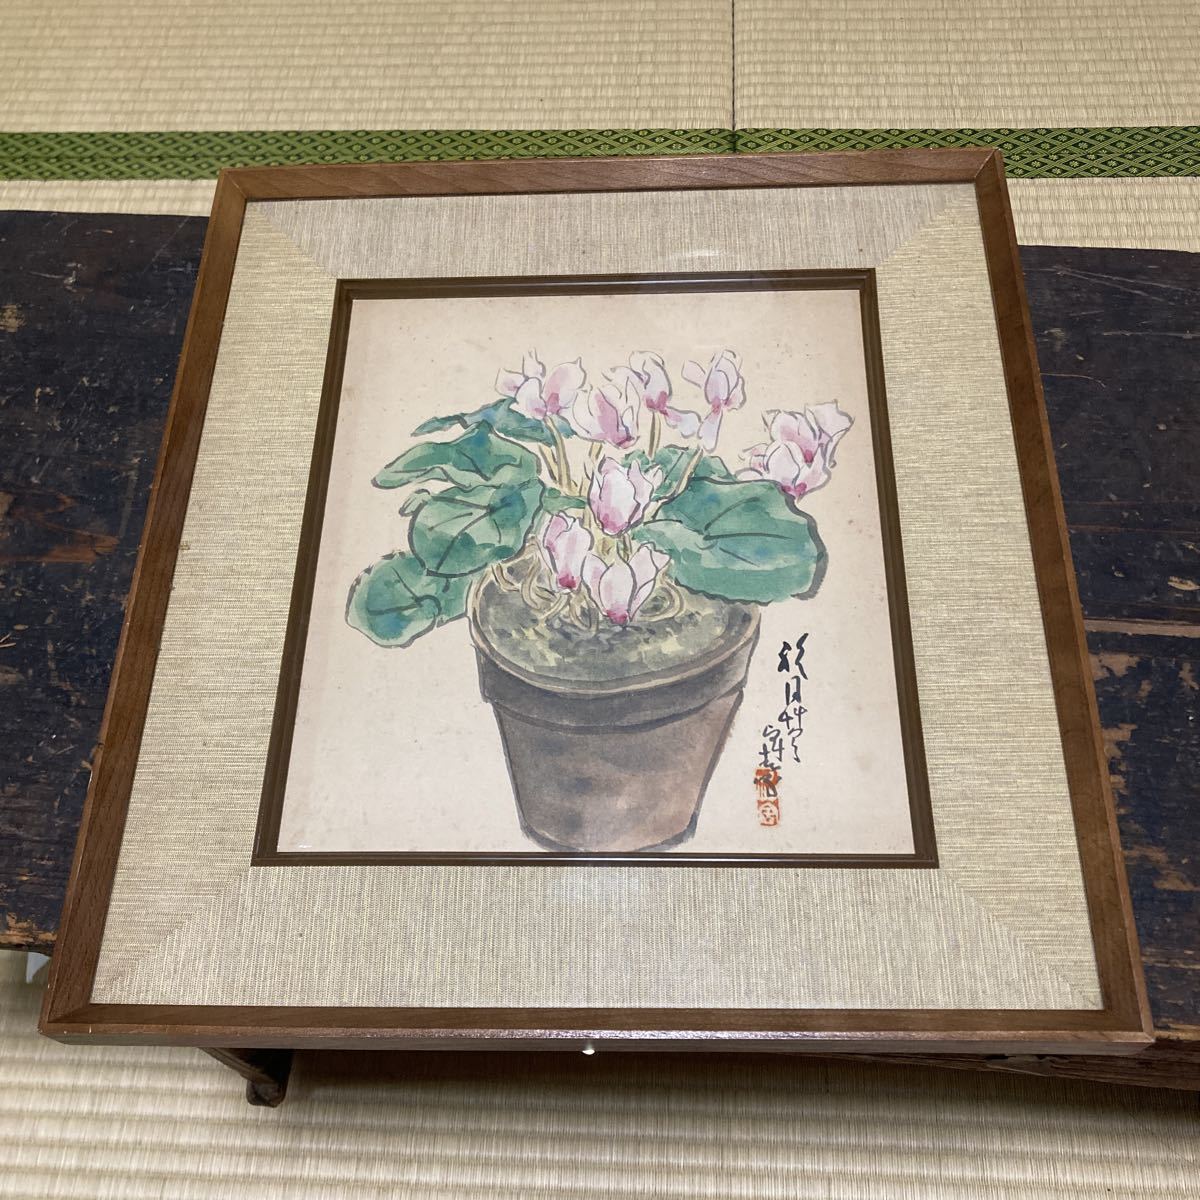 詳細不明 日本画 肉筆 サインあり 花の絵 絵画 額寸 40cm x 36.5cm 古画 コレクション 整理品, 絵画, 日本画, 花鳥, 鳥獣